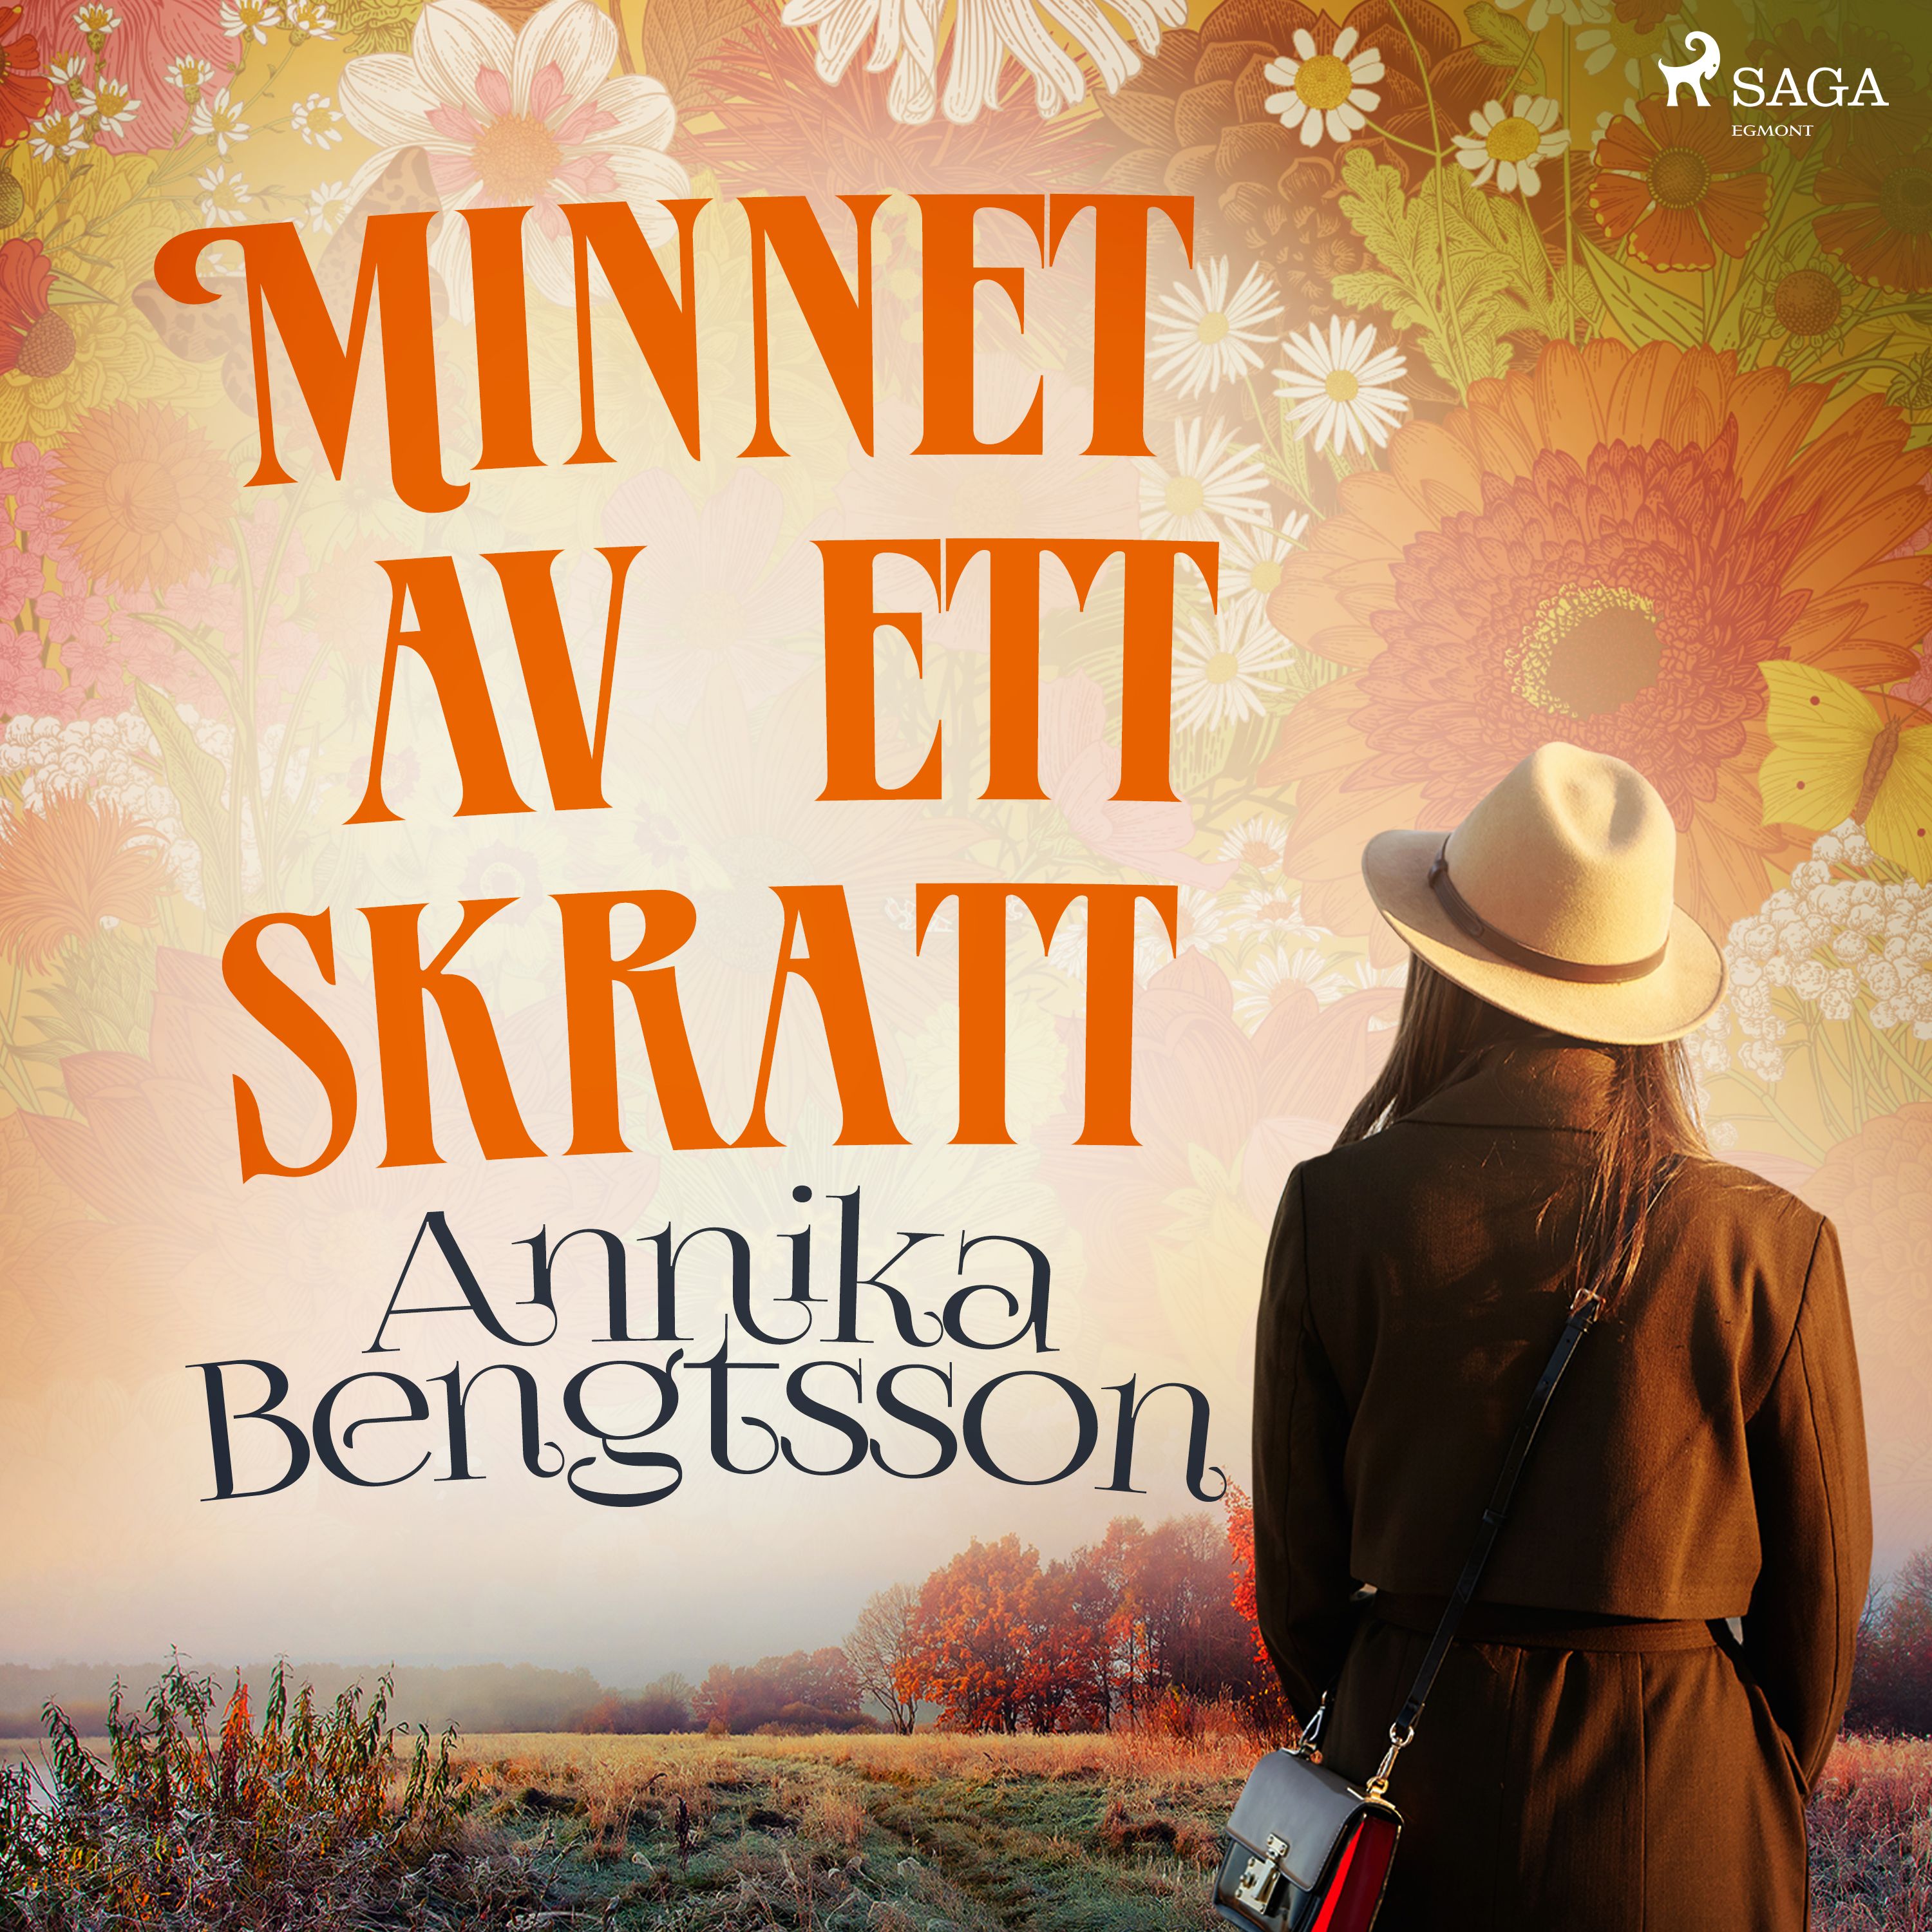 Minnet av ett skratt, ljudbok av Annika Bengtsson